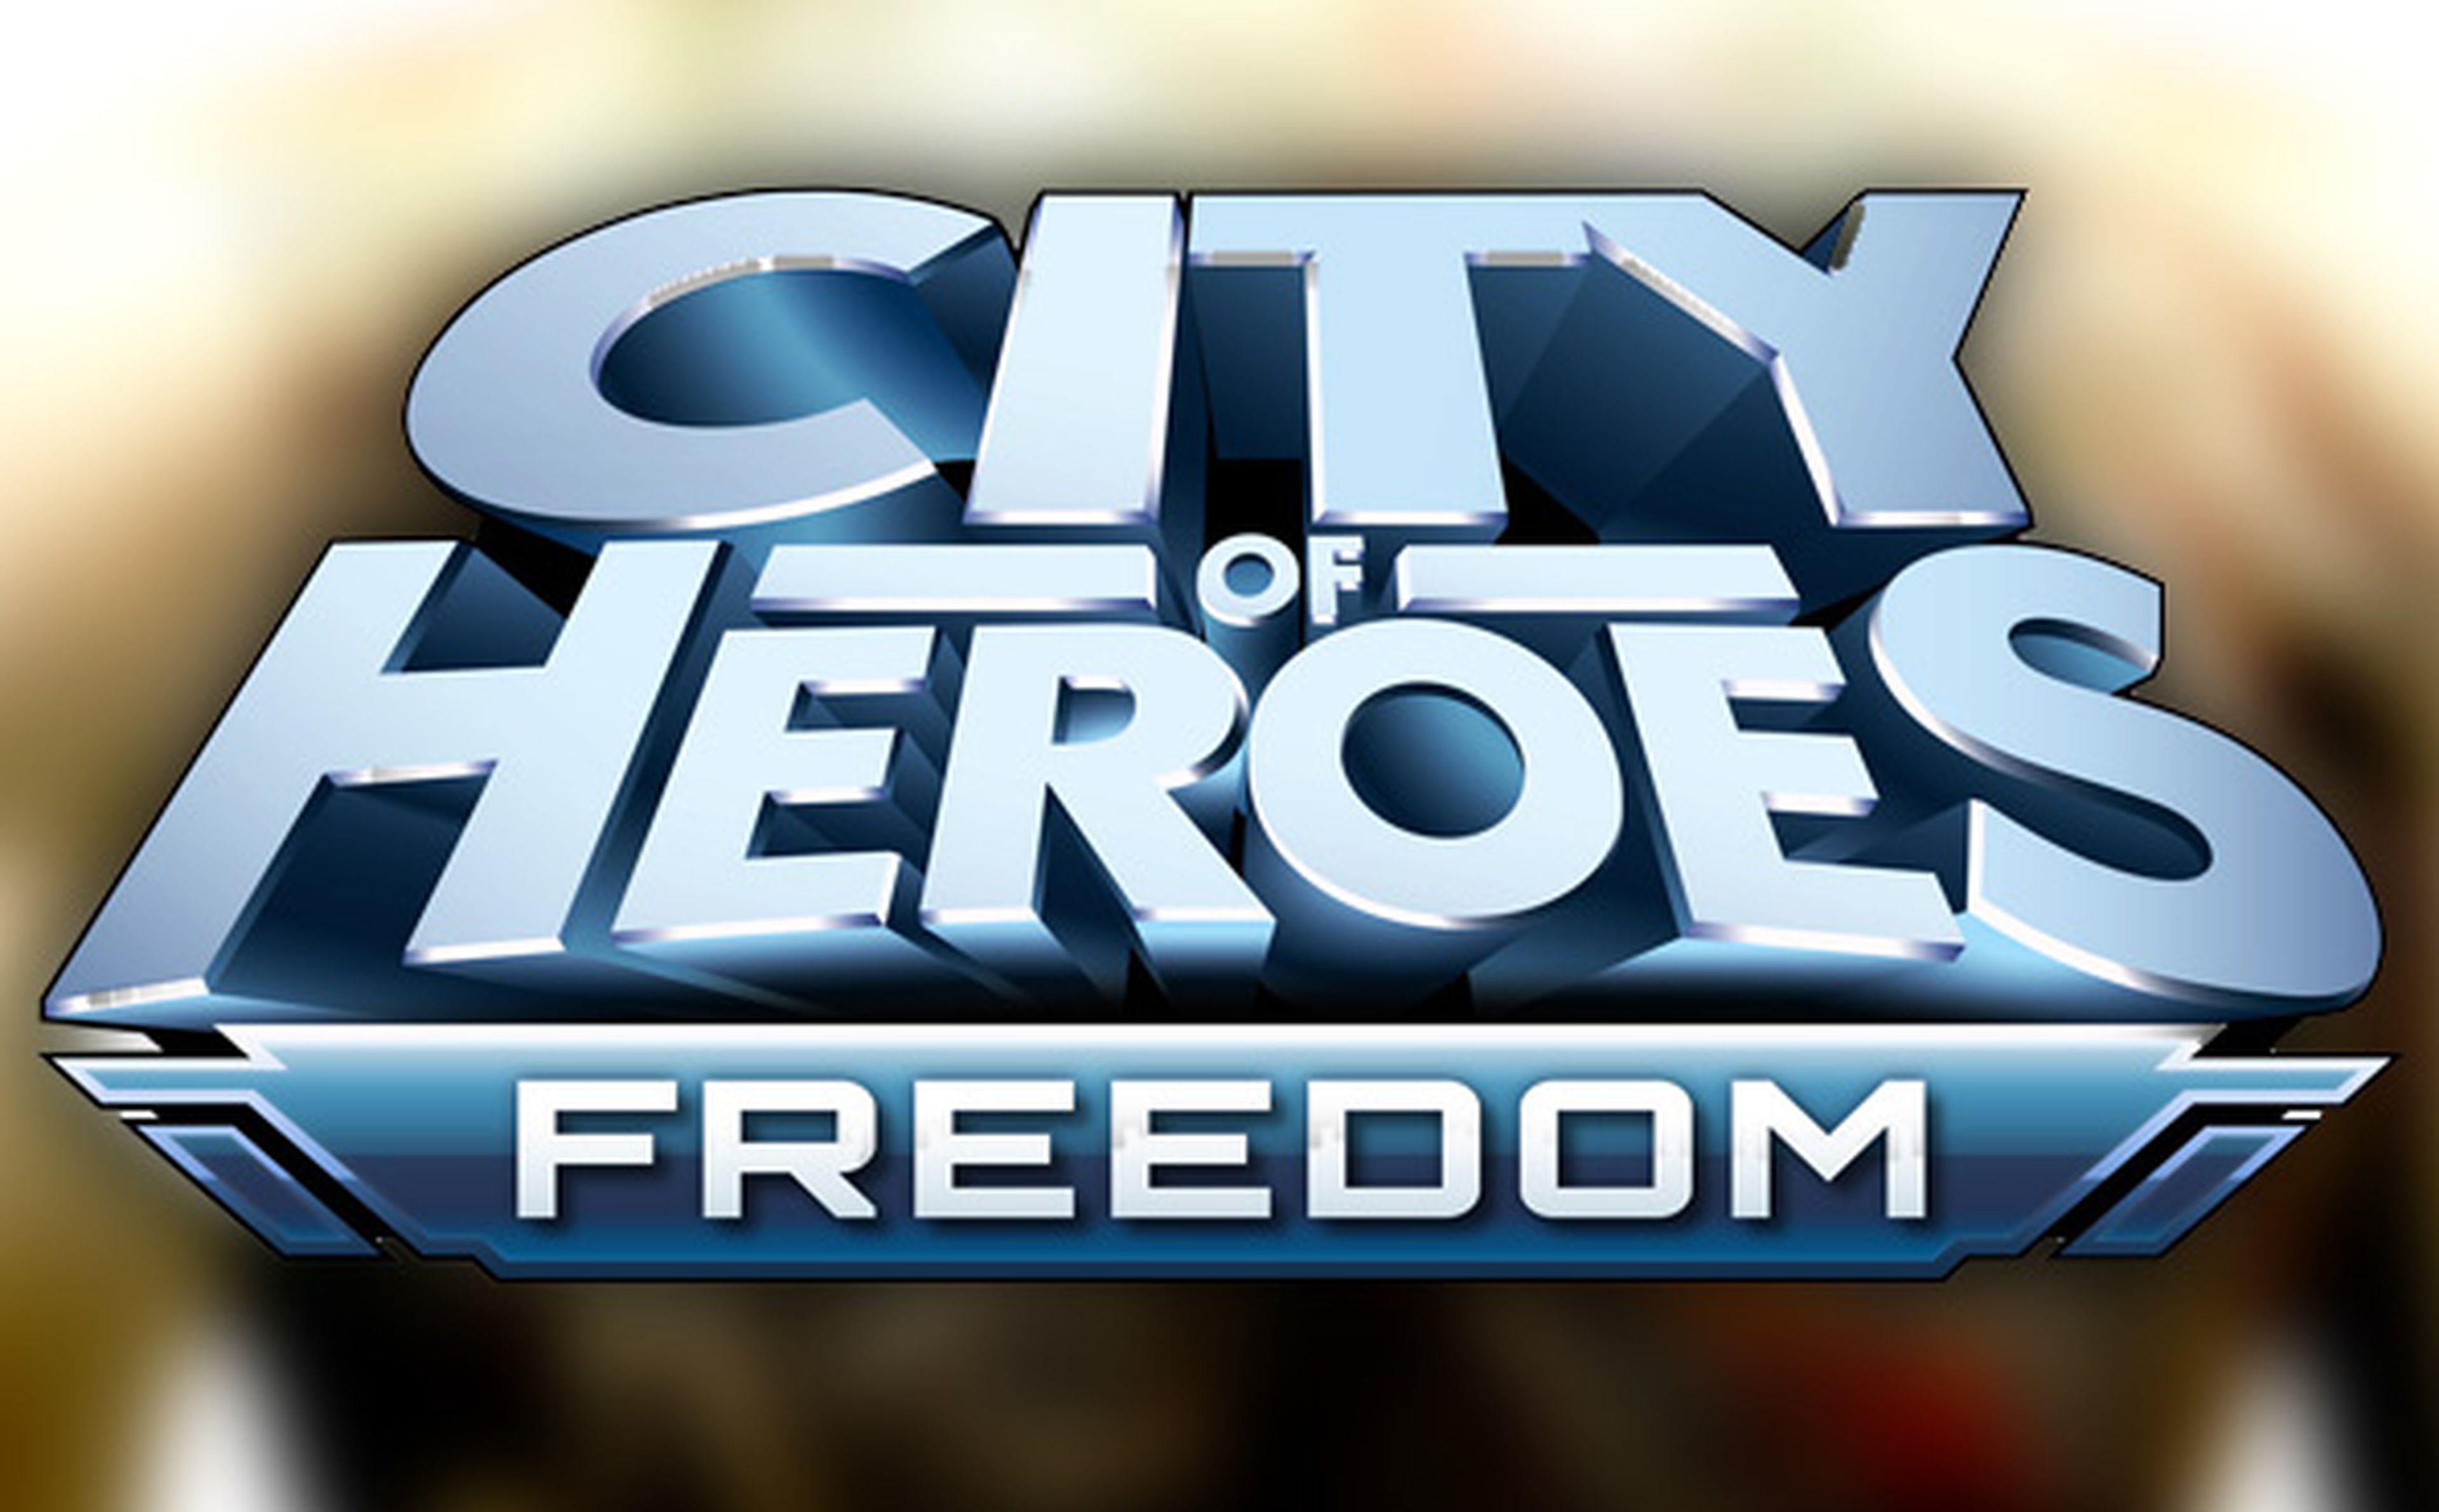 City of Heroes, sí pero no al free-to-play